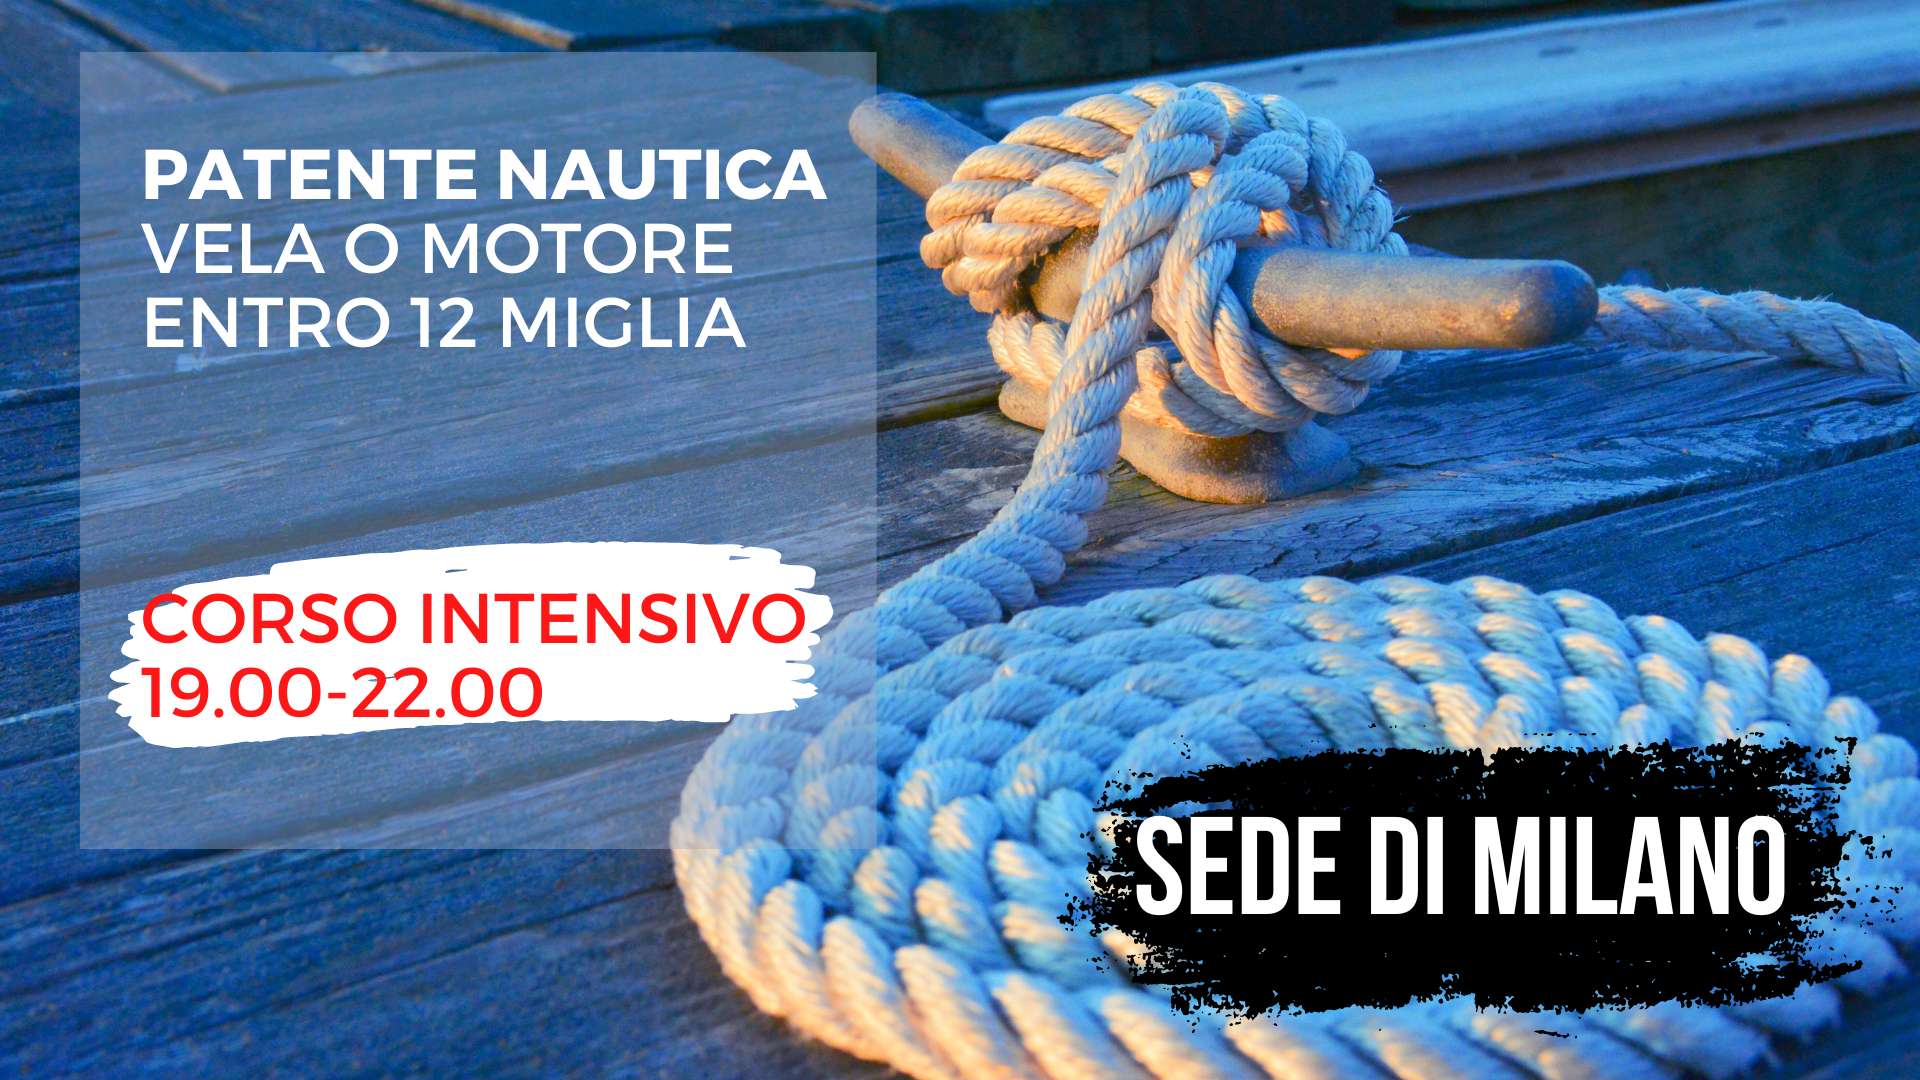 Scuola nautica Blu Oltremare Milano: CORSO INTENSIVO PATENTE NAUTICA ENTRO 12 MIGLIA - MARTEDI SERA (4 sessioni da 3 ore)